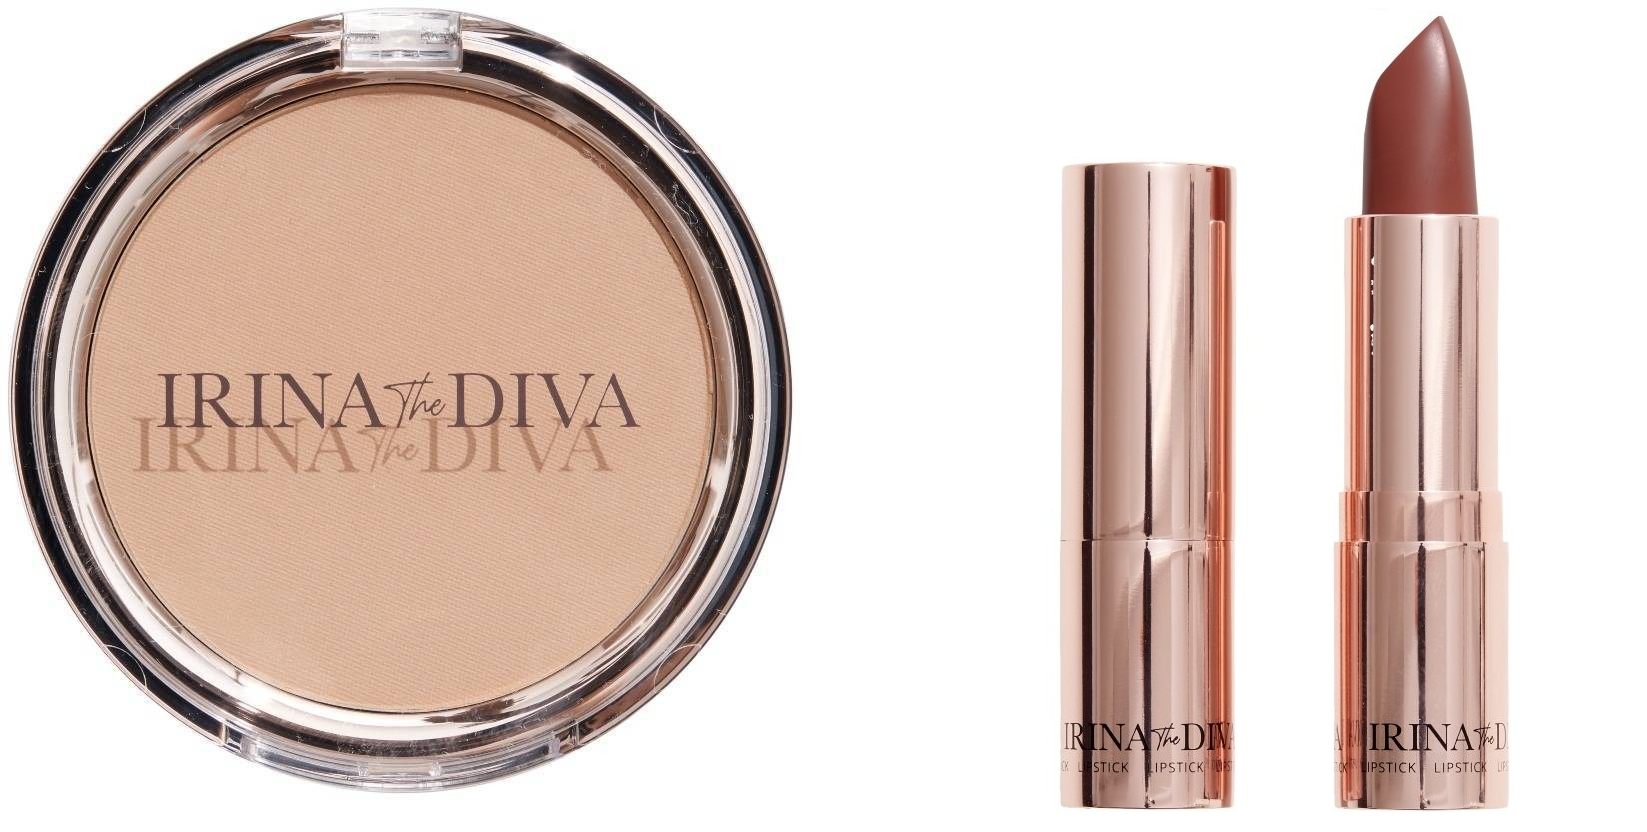 Irina The Diva - Lipstick 006 WITCH KISS  + Filter Matte Bronzing Powder Natural Beauty 001